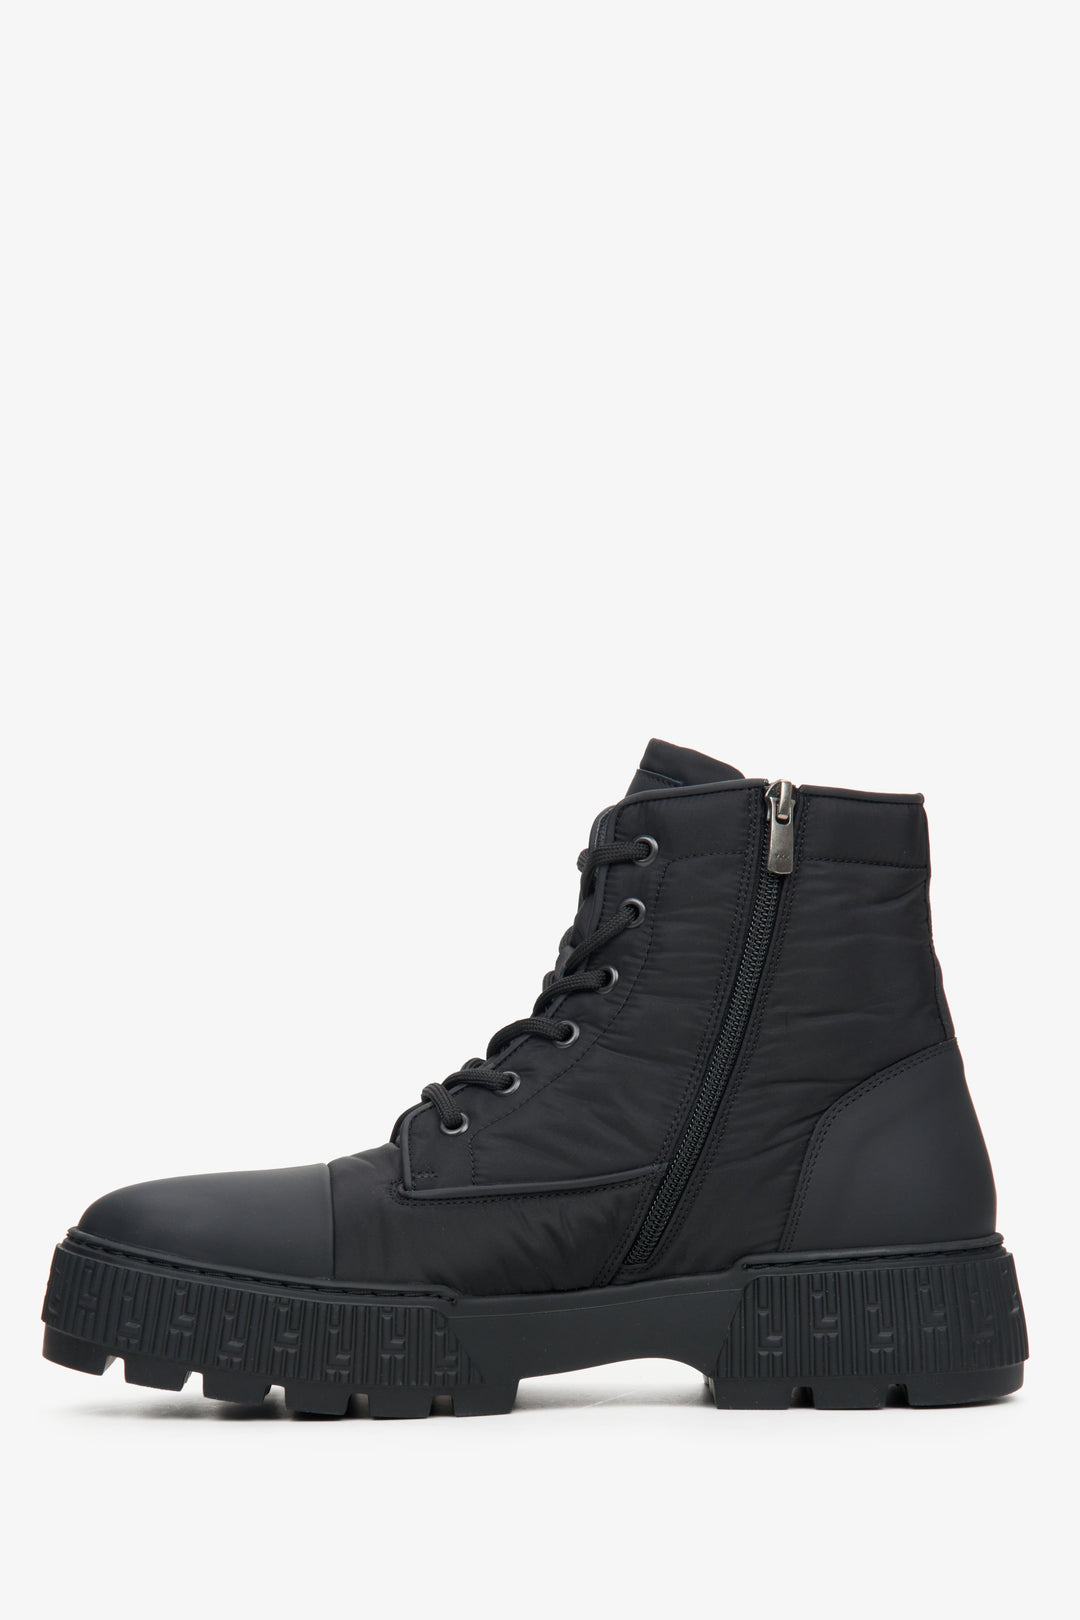 Men's black Estro textile-style boots - shoe profile.